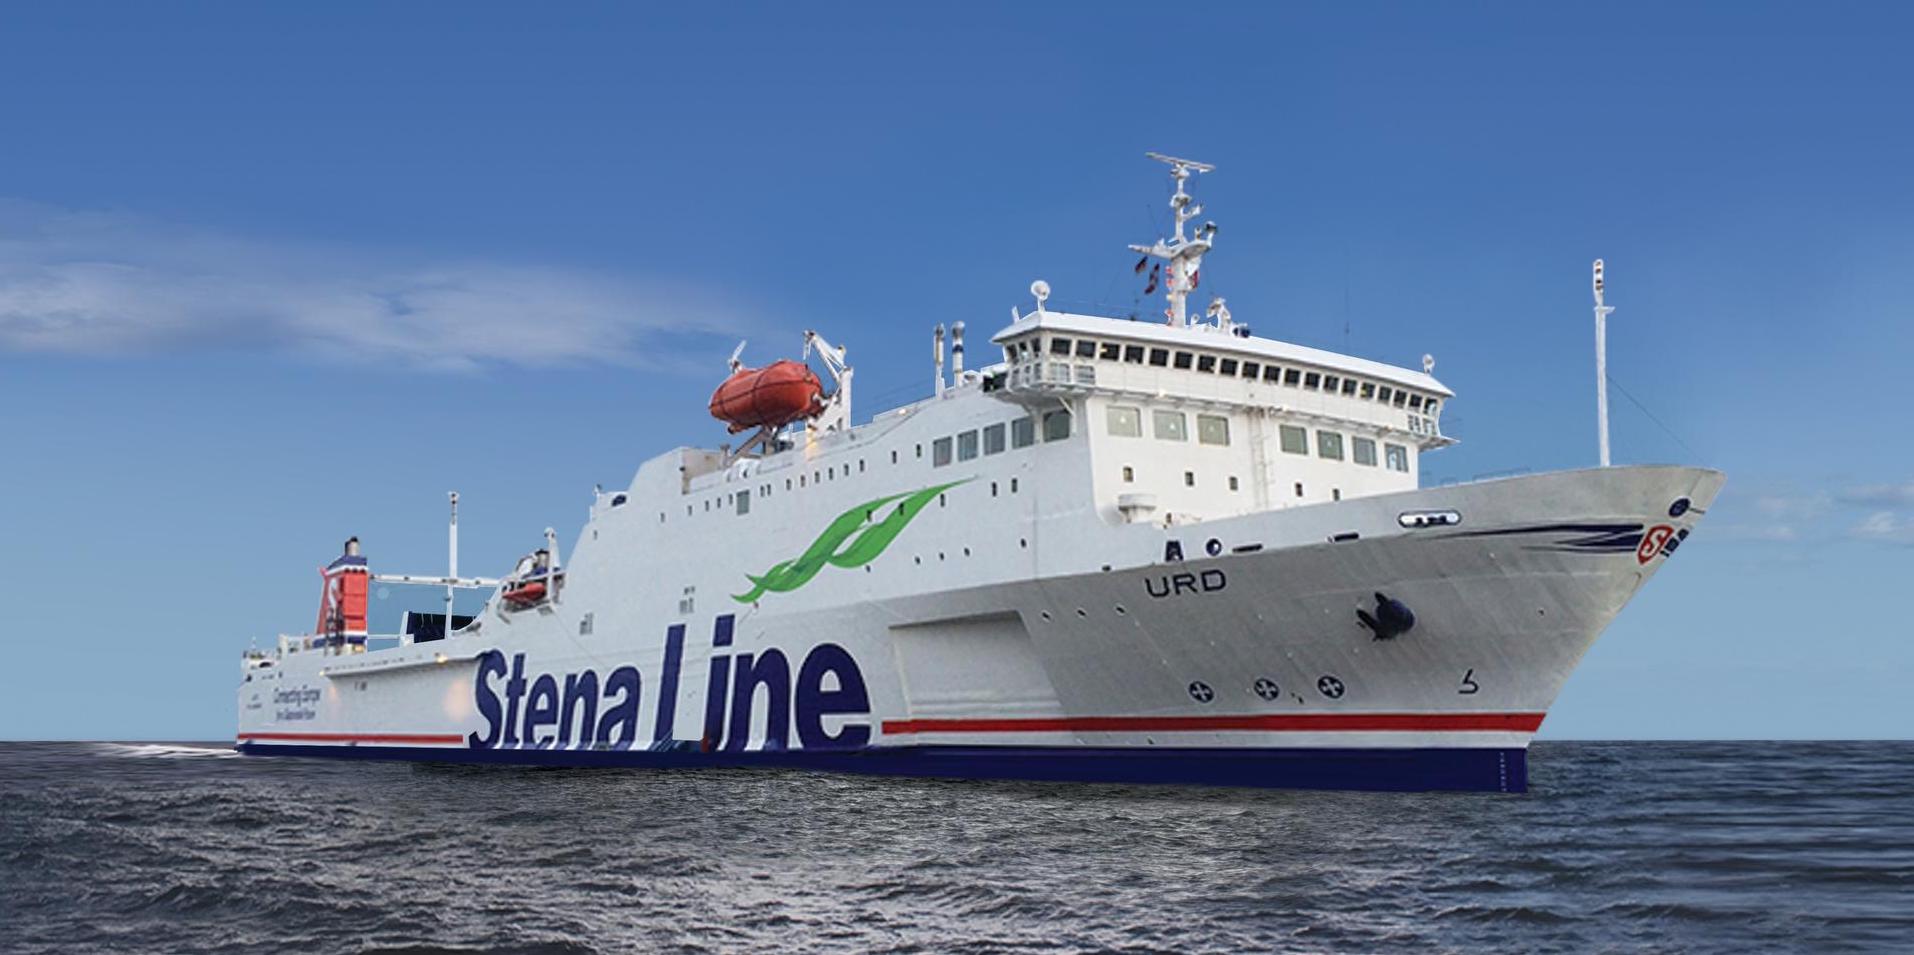 Foto van Stena Line - Urd schip